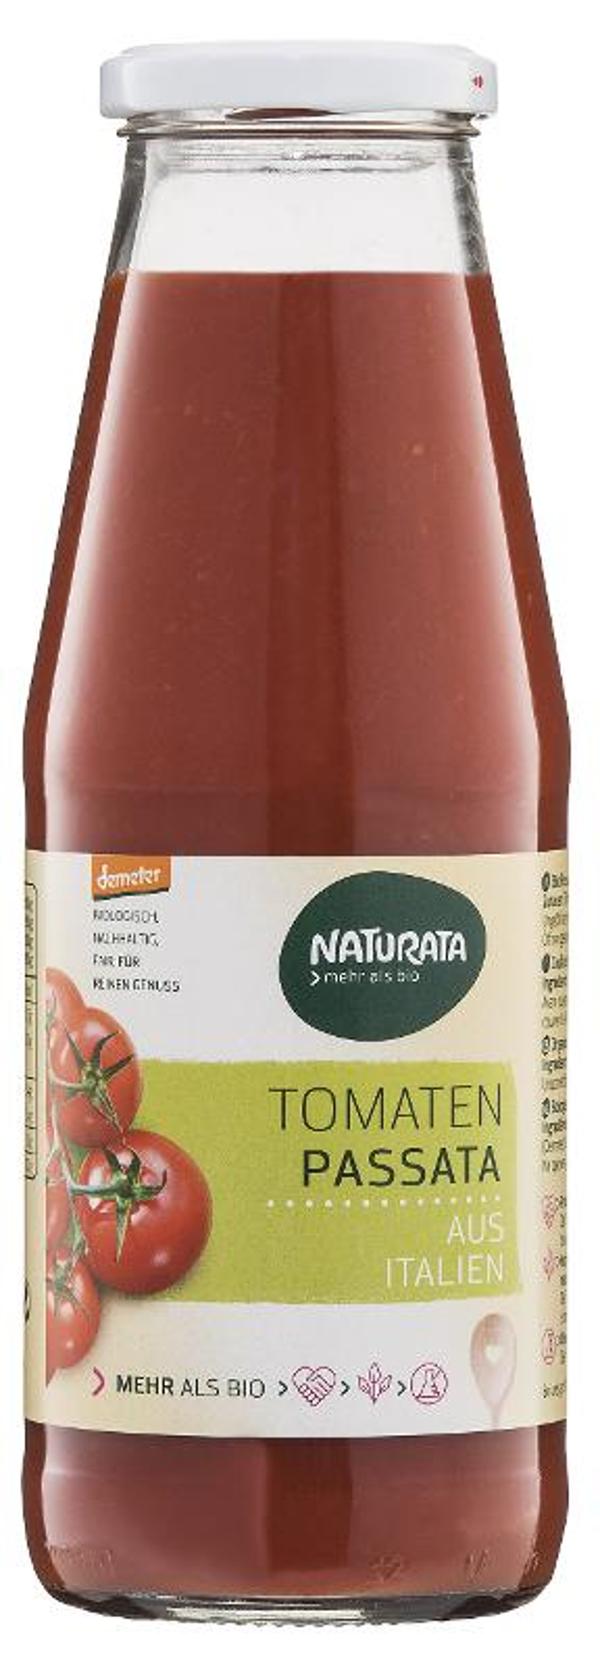 Produktfoto zu Tomatenpassata